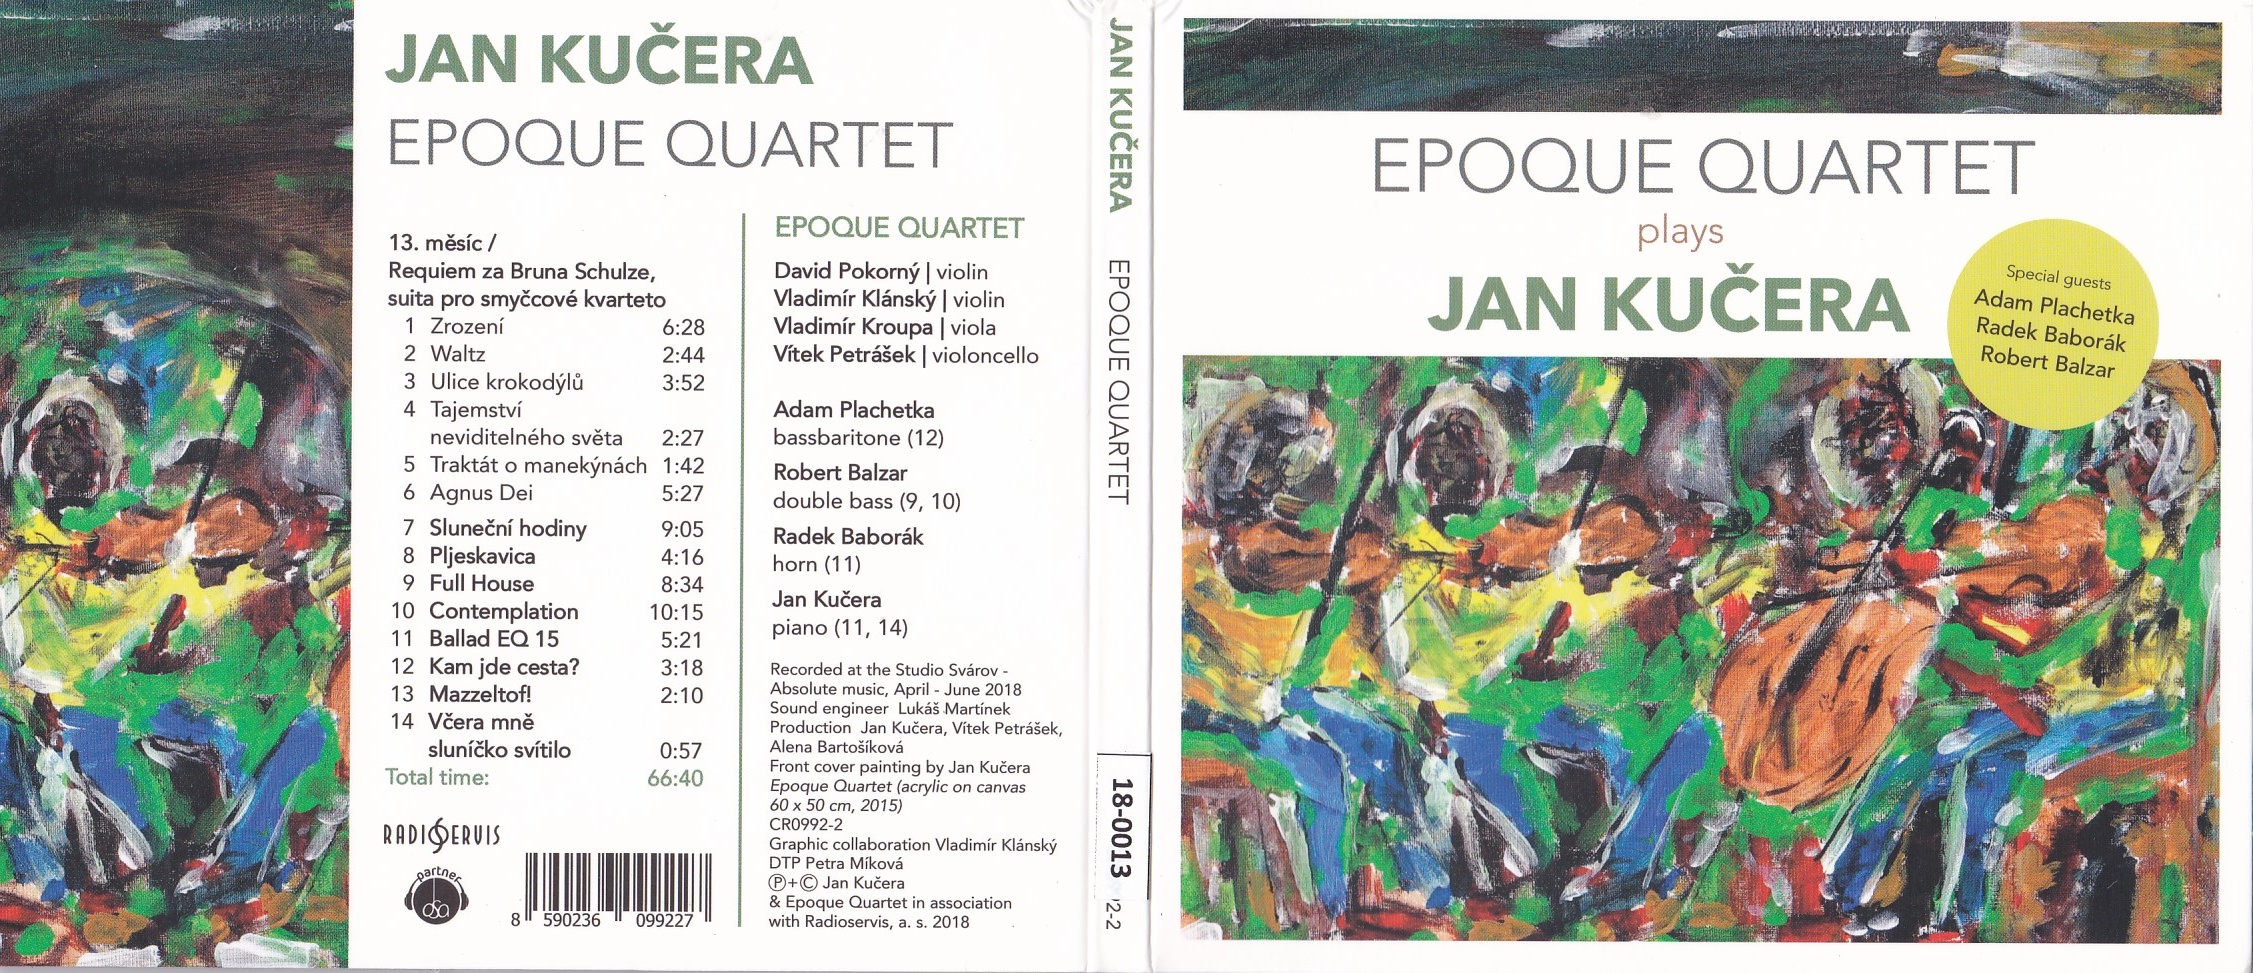 Epoque Quartet plays; 